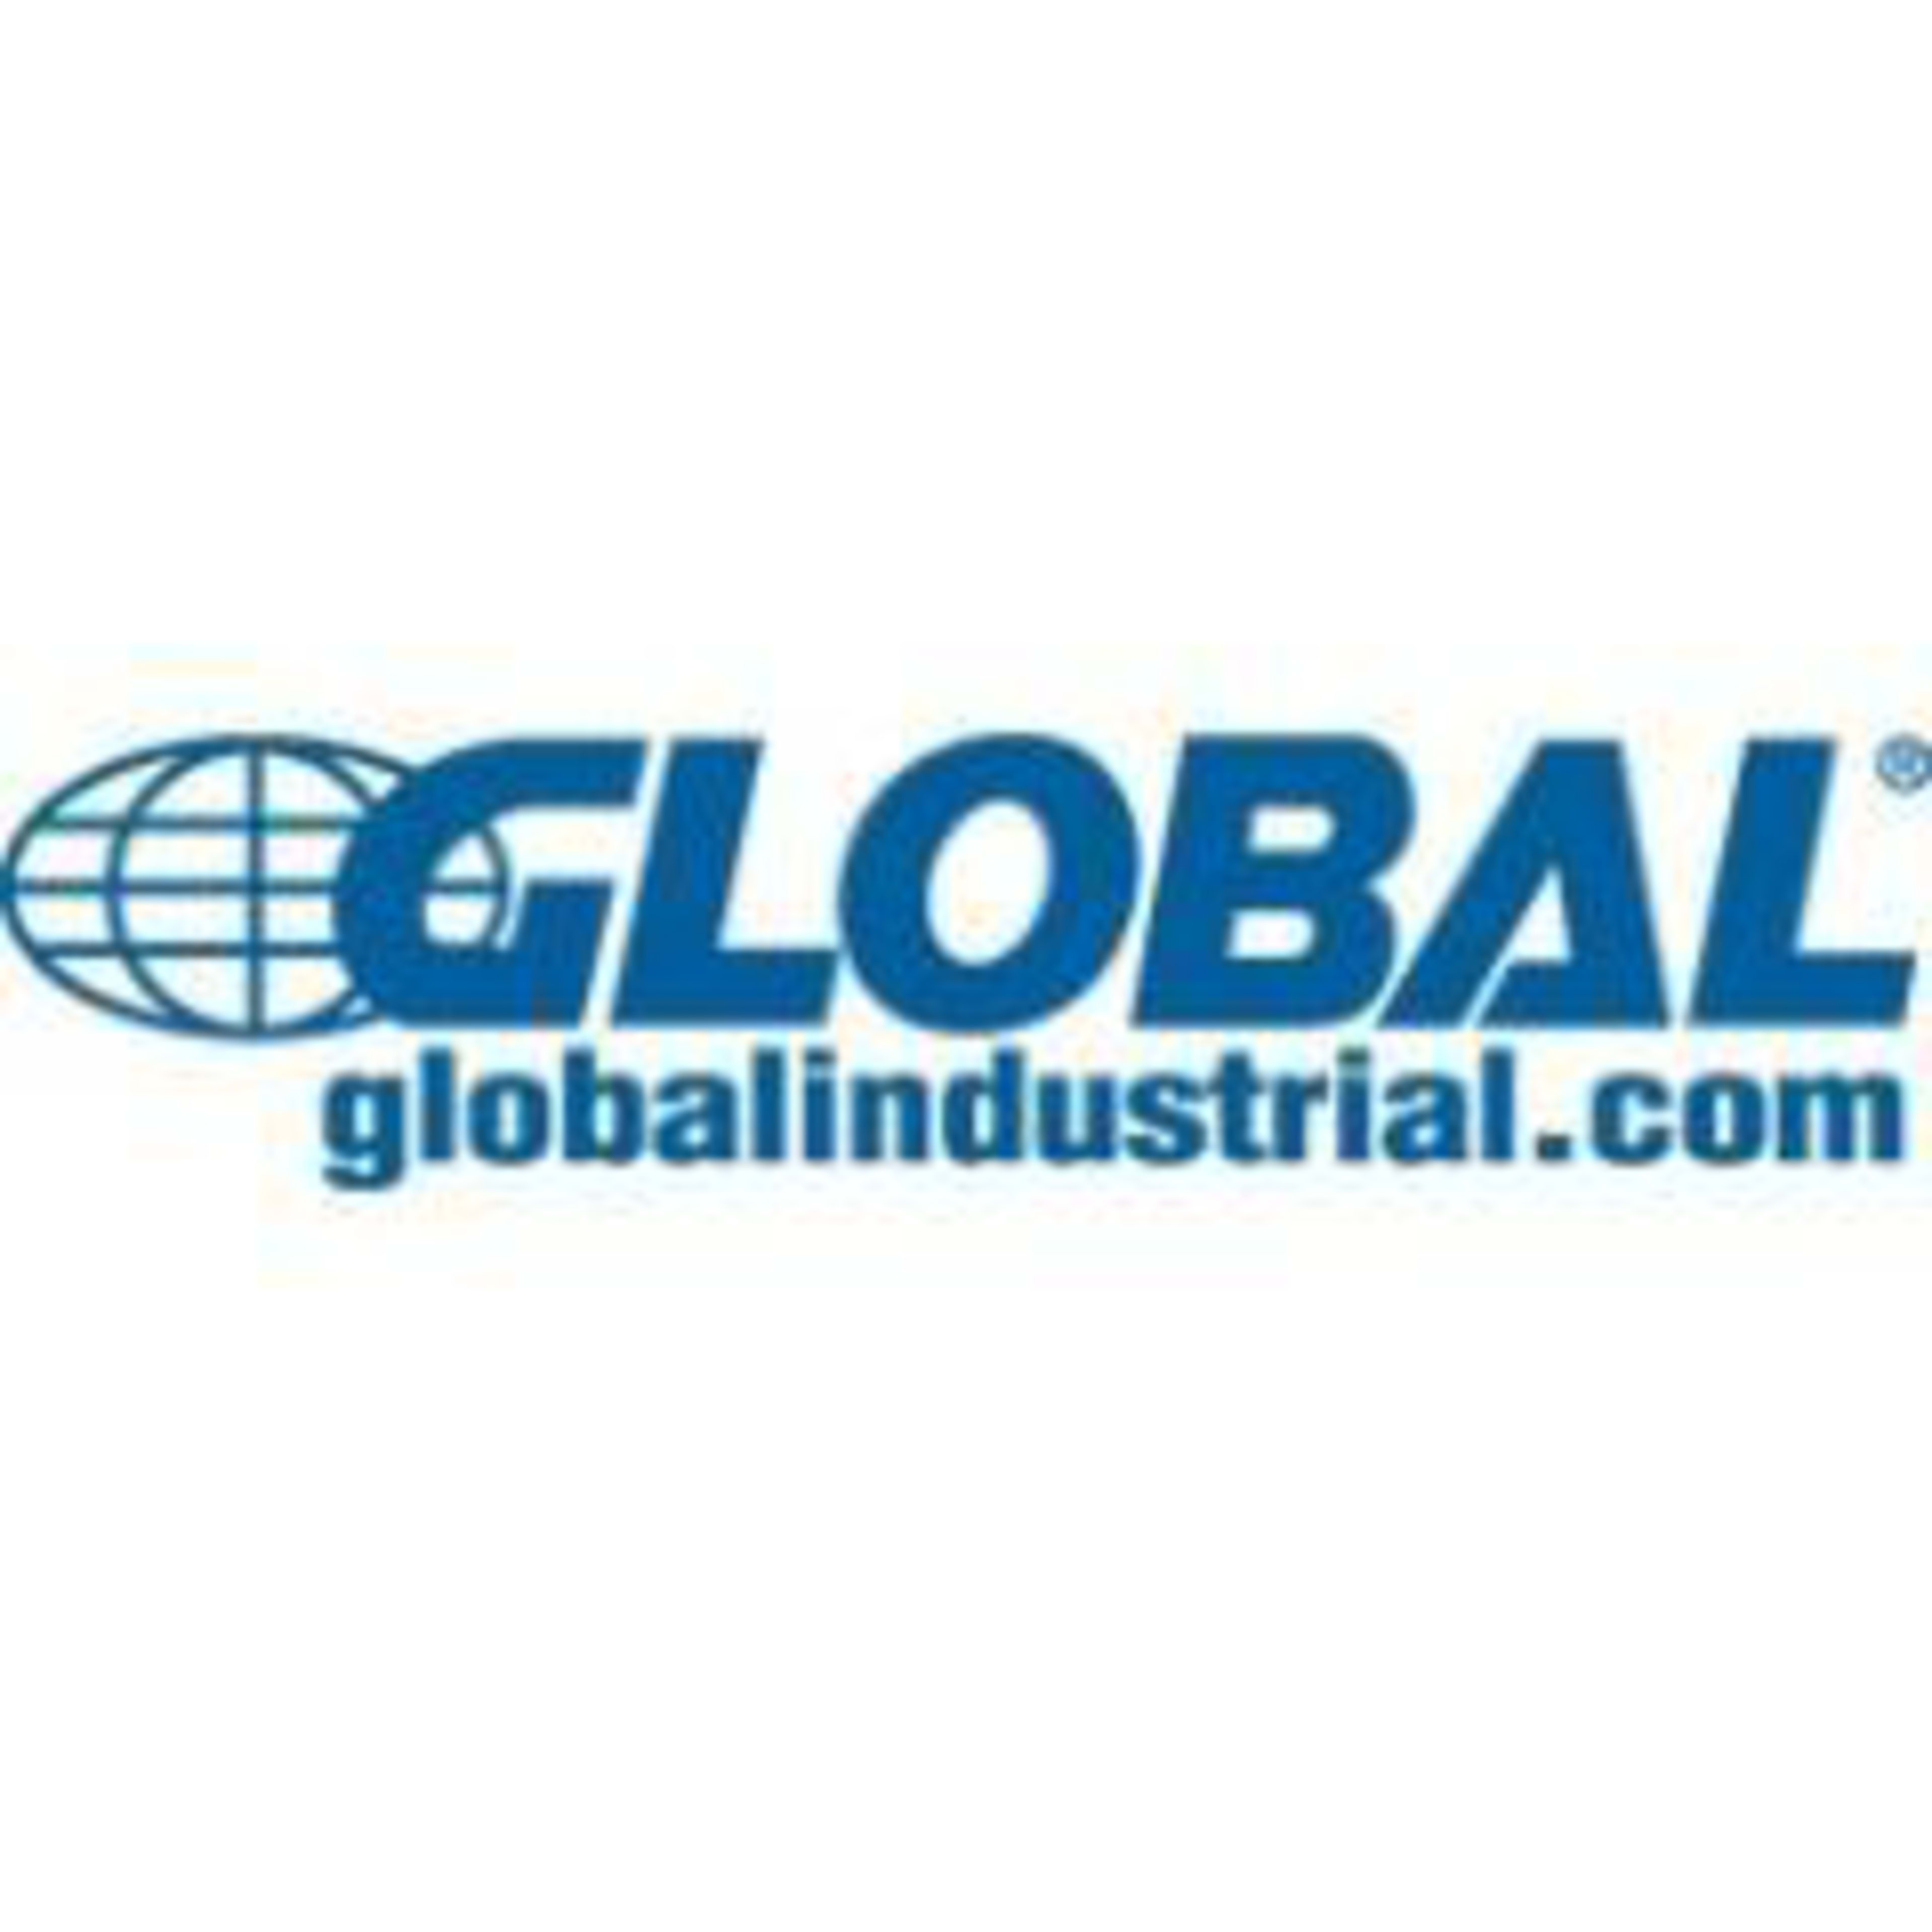 Global Industrial Code